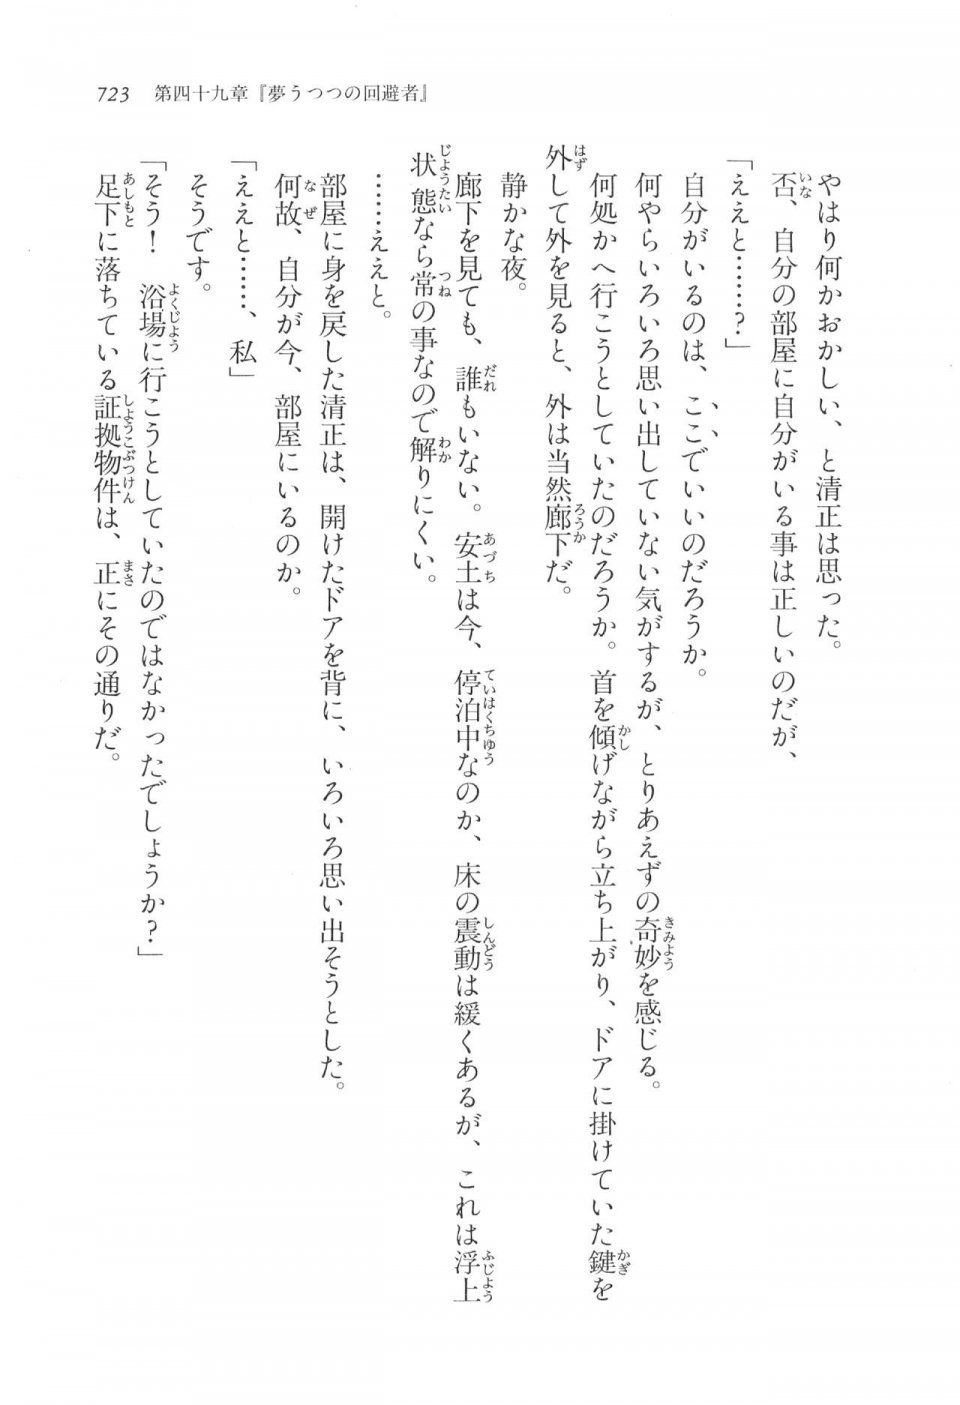 Kyoukai Senjou no Horizon LN Vol 17(7B) - Photo #725